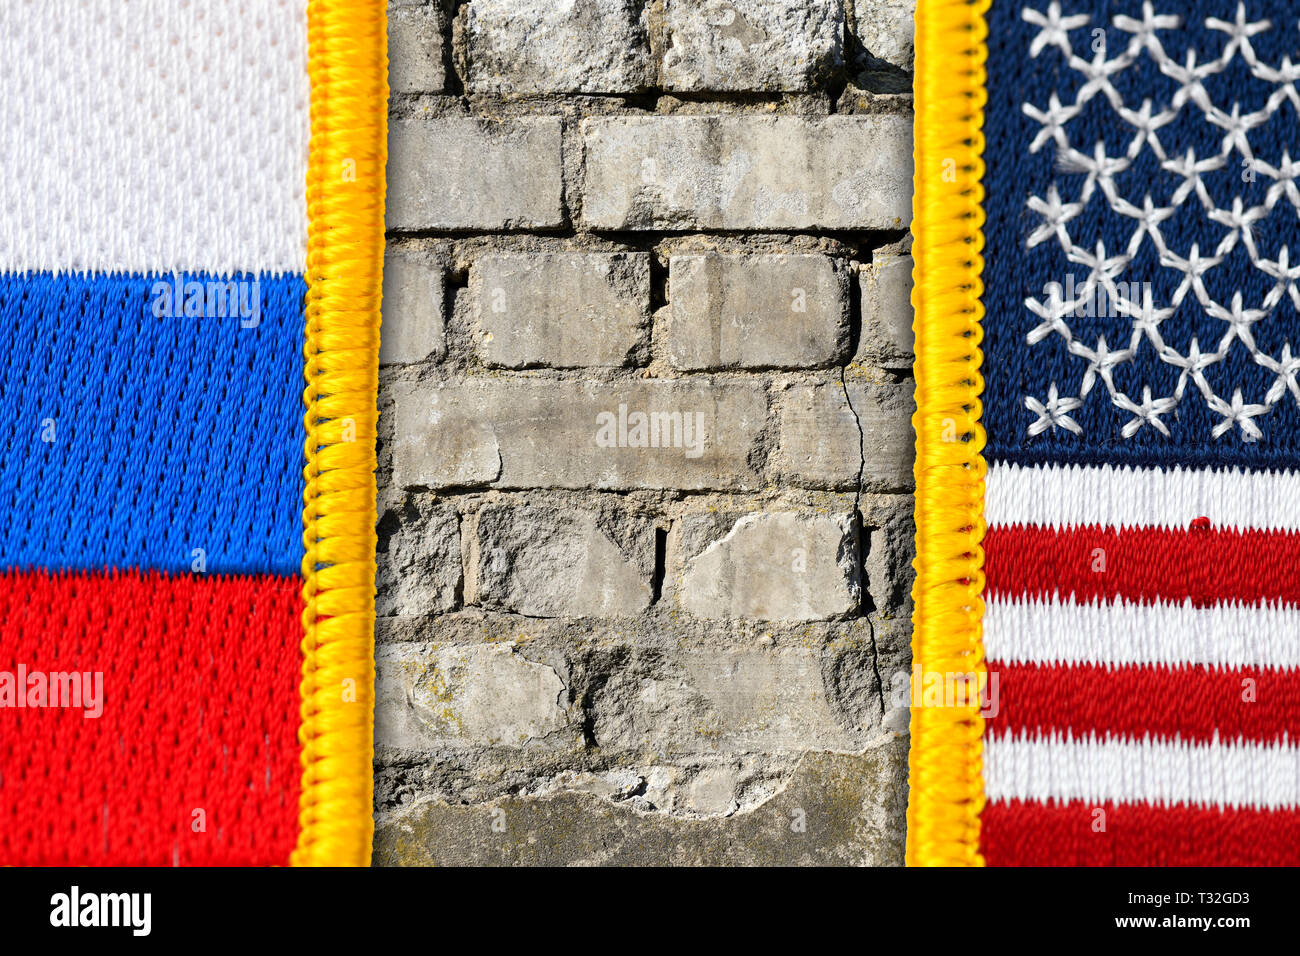 Más mal entre las banderas de los EE.UU. y Rusia, EE.UU. Finalizar contrato INF, Mauer zwischen Fahnen von USA und Russland, USA beenden INF-Vertrag Foto de stock